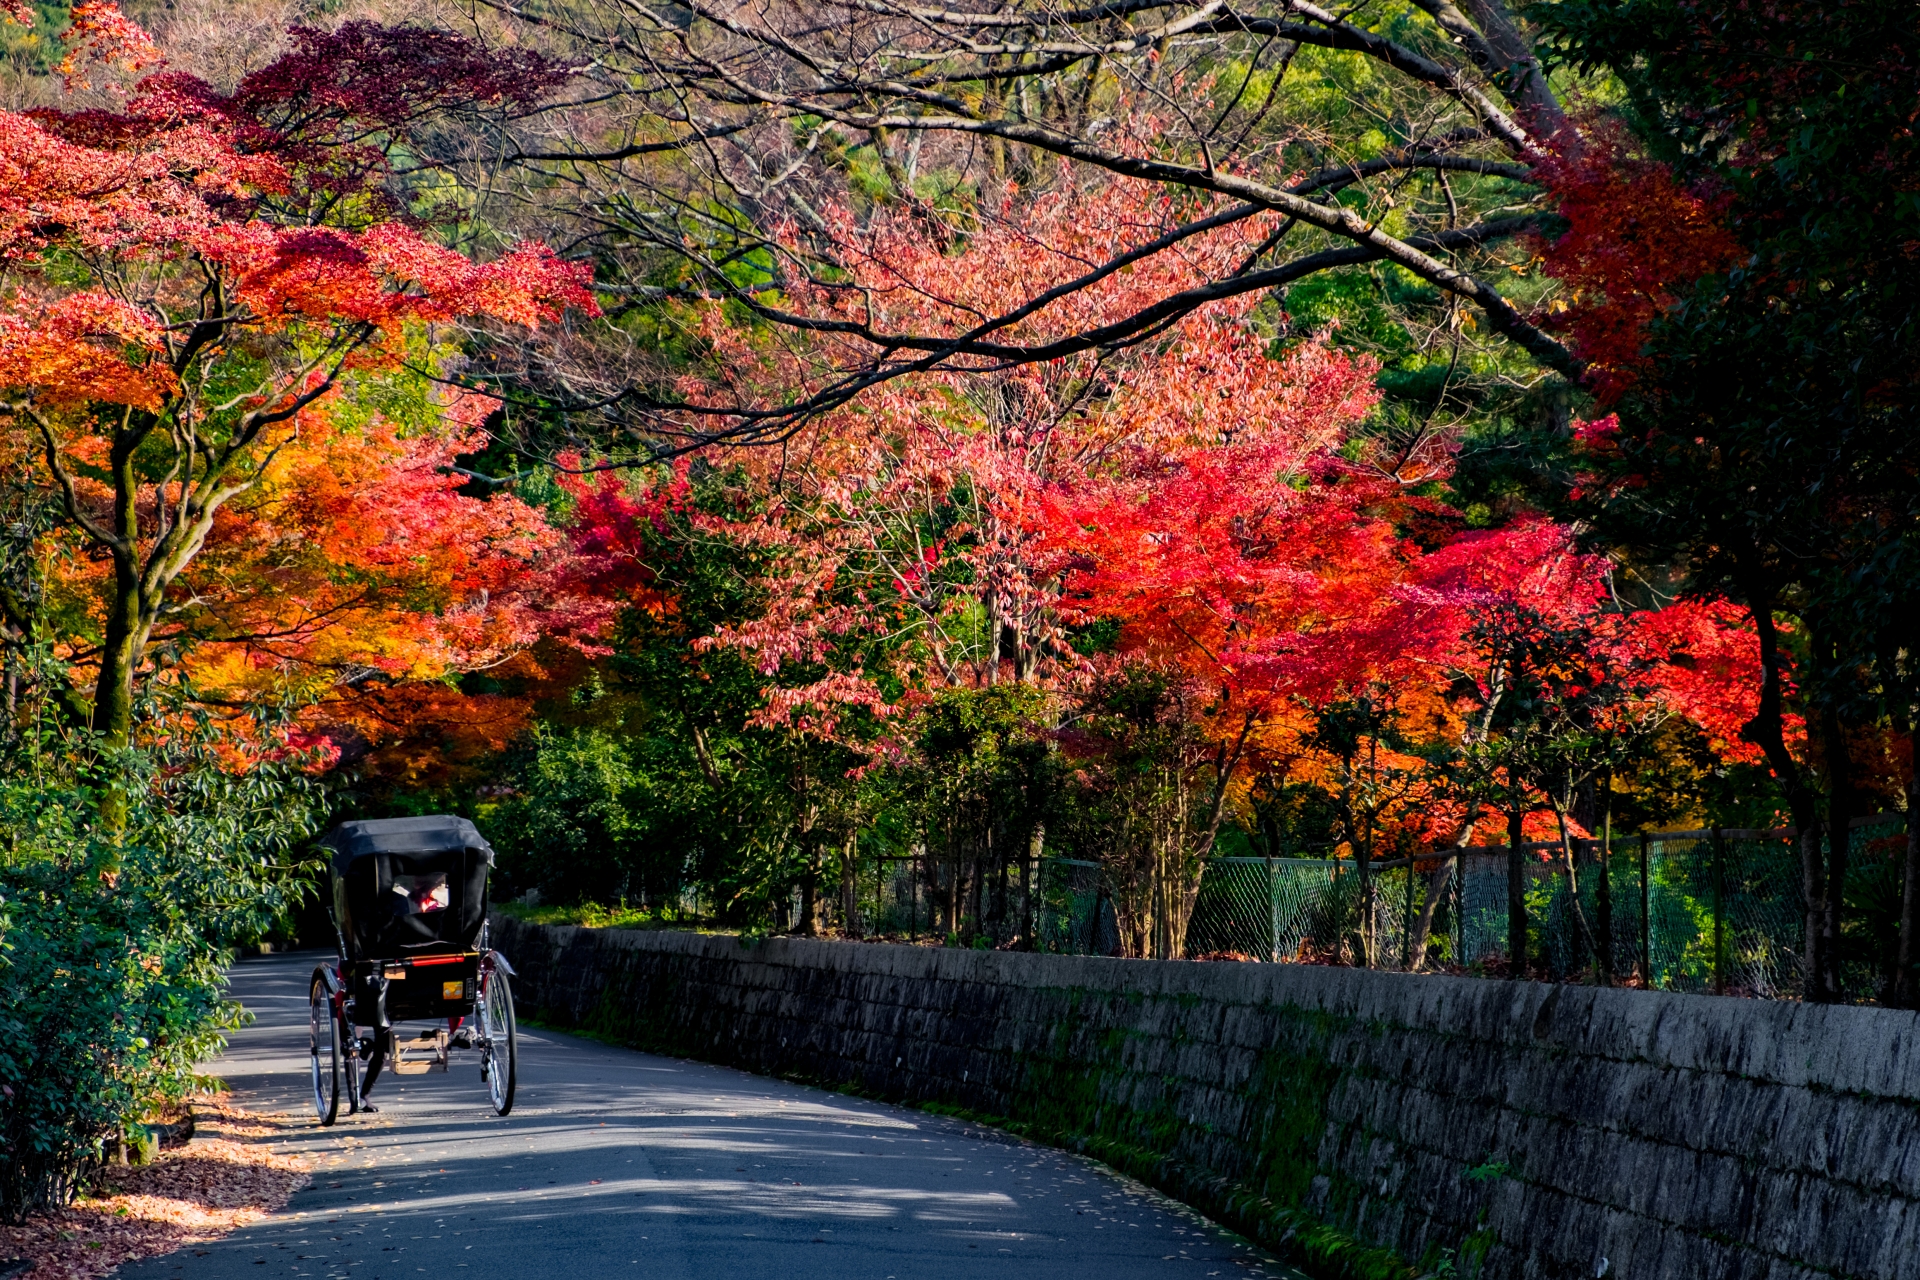 円山公園の見どころ、おすすめ、アクセス情報【京都旅行】